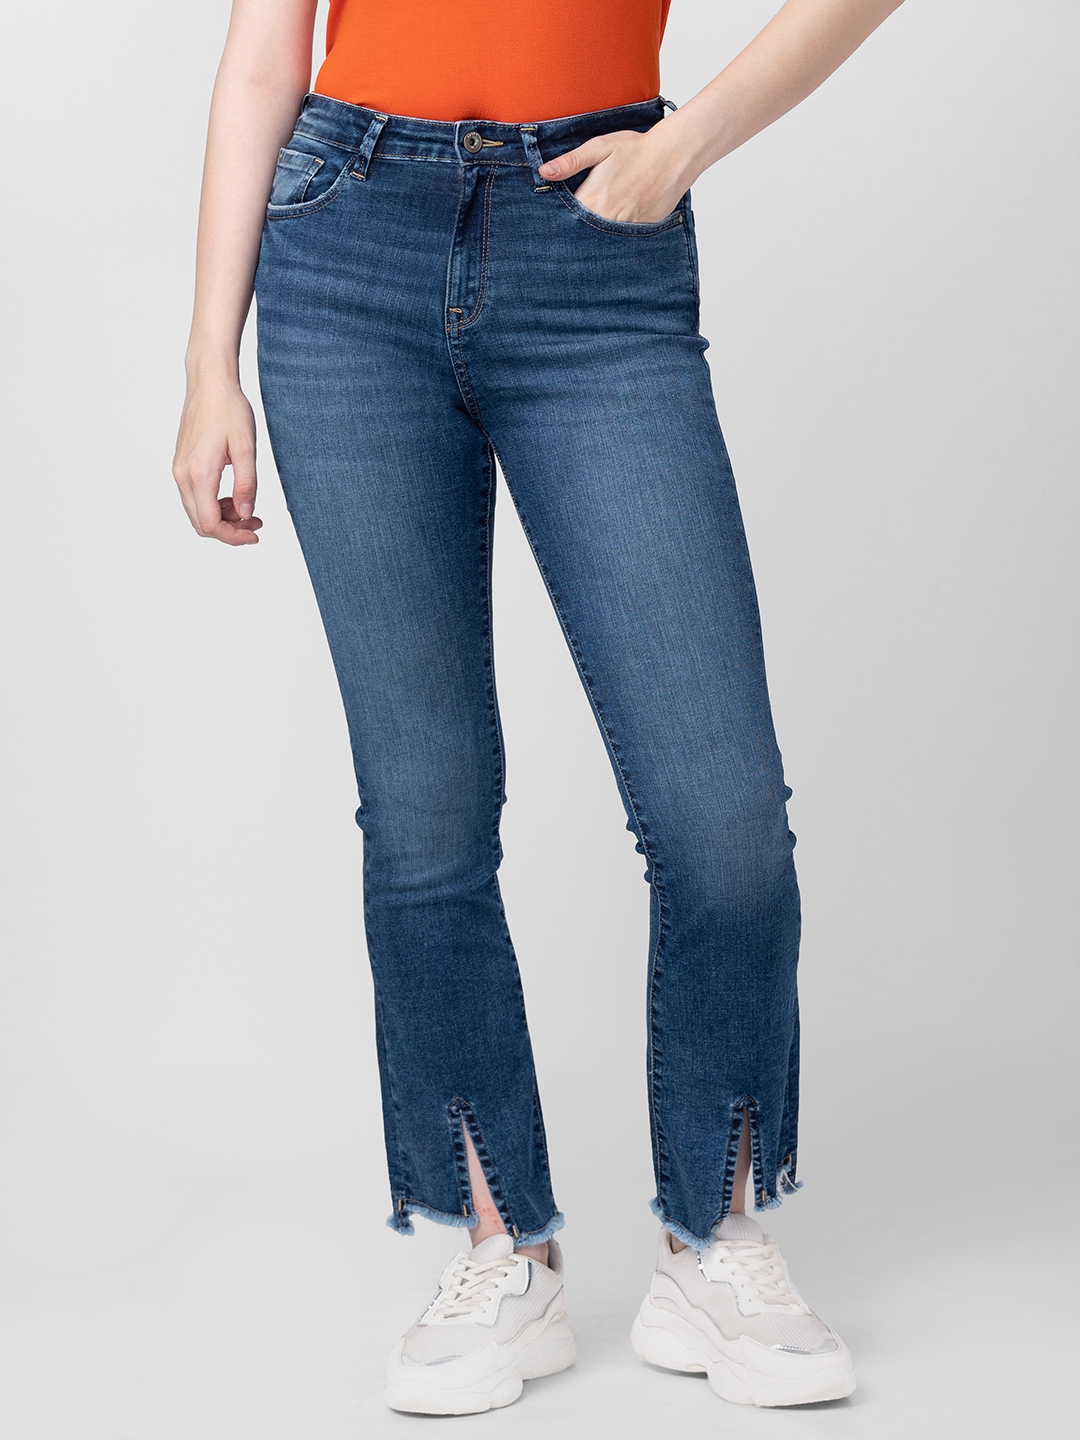 Women's Blue Cotton Solid Jeans